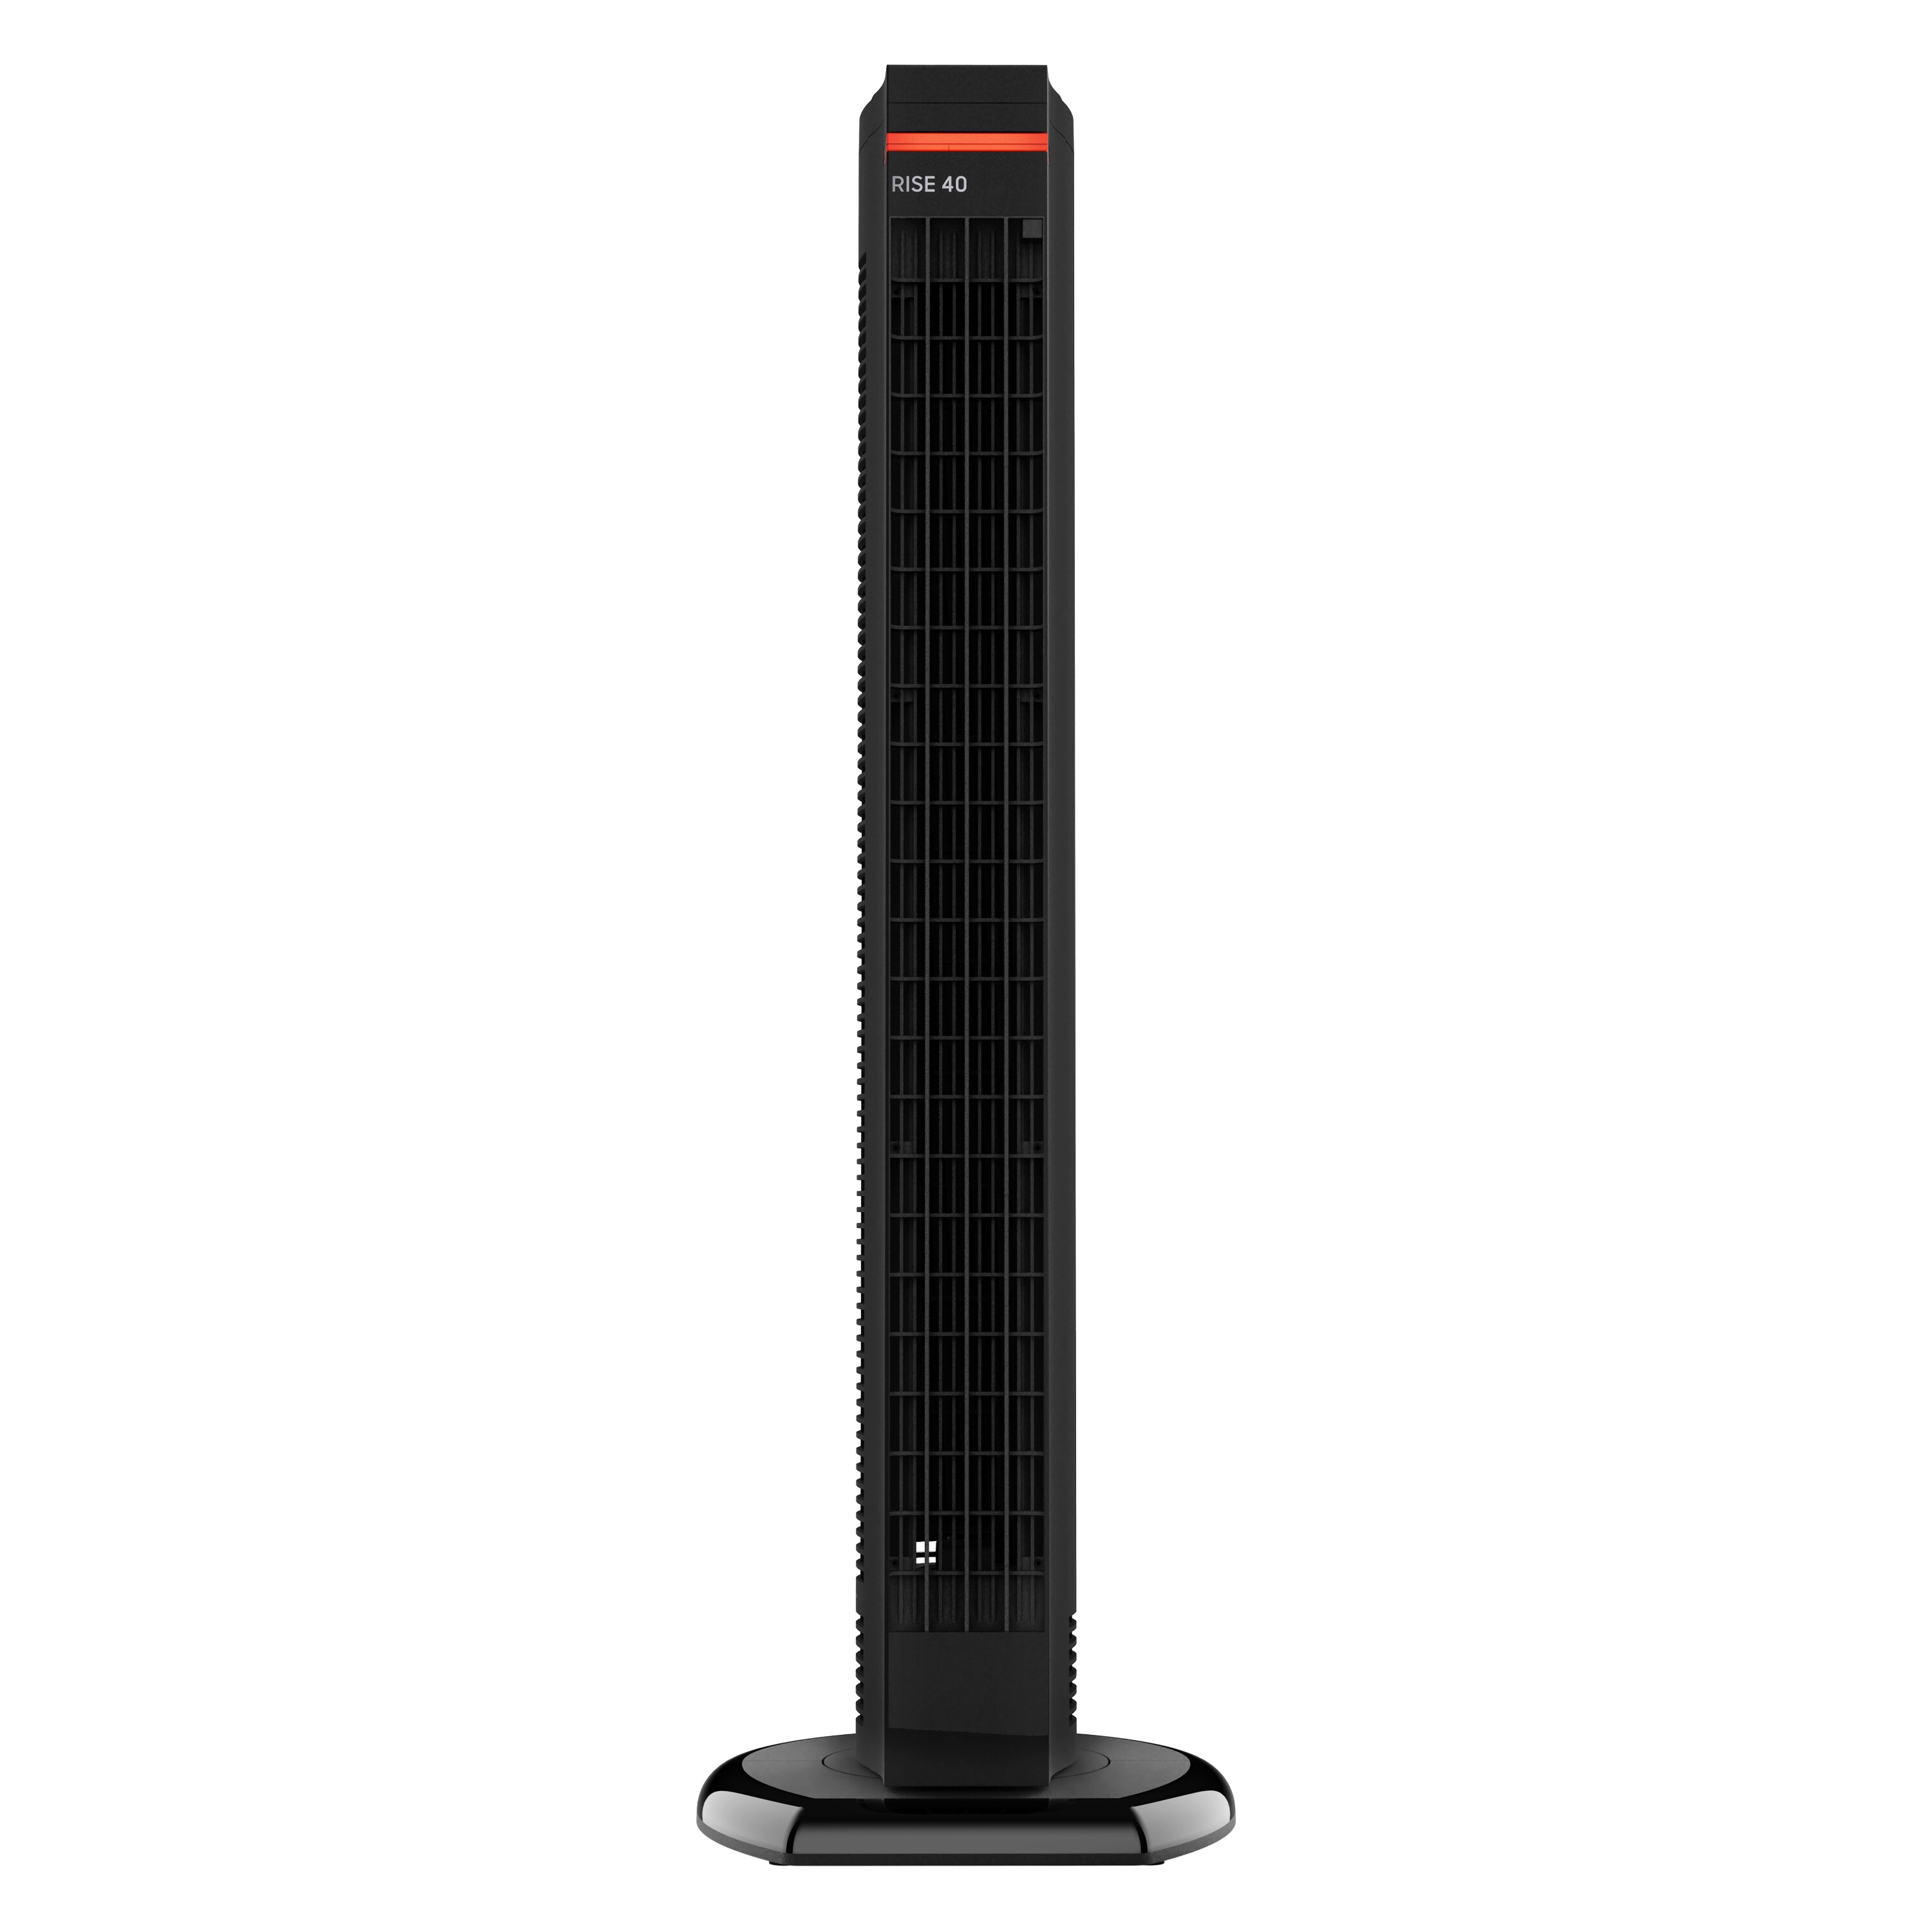 生活家電 冷蔵庫 Sharper Image 38.8-in 4-Speed Indoor Black Oscillating Tower Fan 